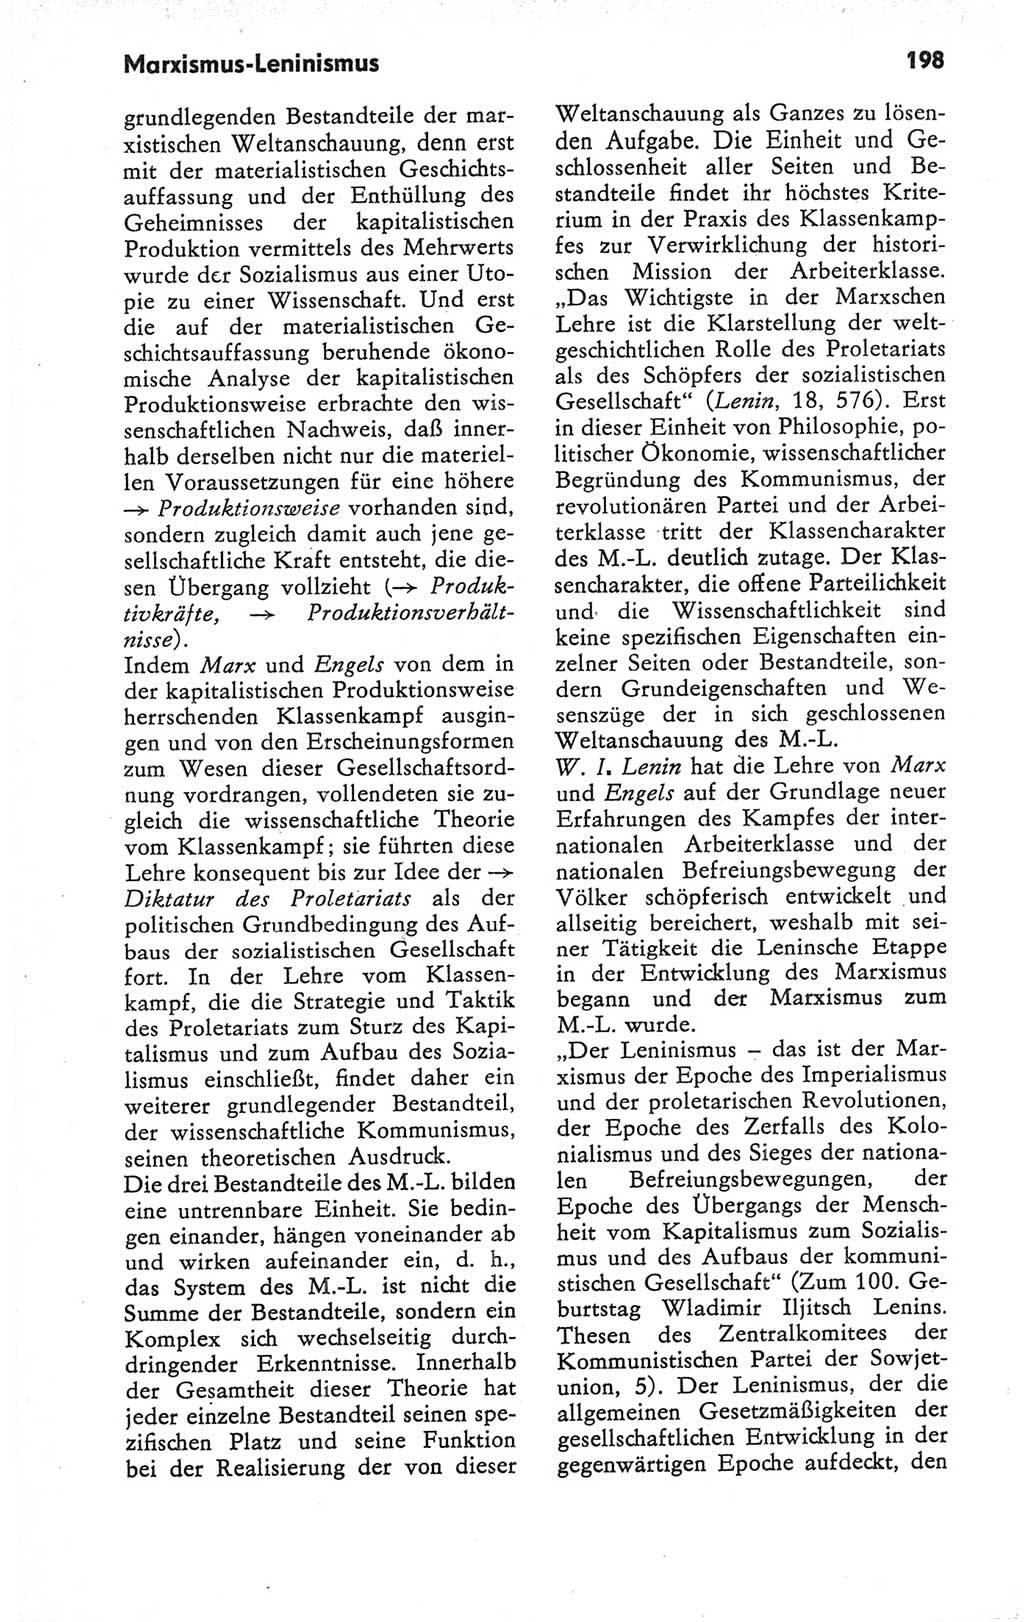 Kleines Wörterbuch der marxistisch-leninistischen Philosophie [Deutsche Demokratische Republik (DDR)] 1979, Seite 198 (Kl. Wb. ML Phil. DDR 1979, S. 198)